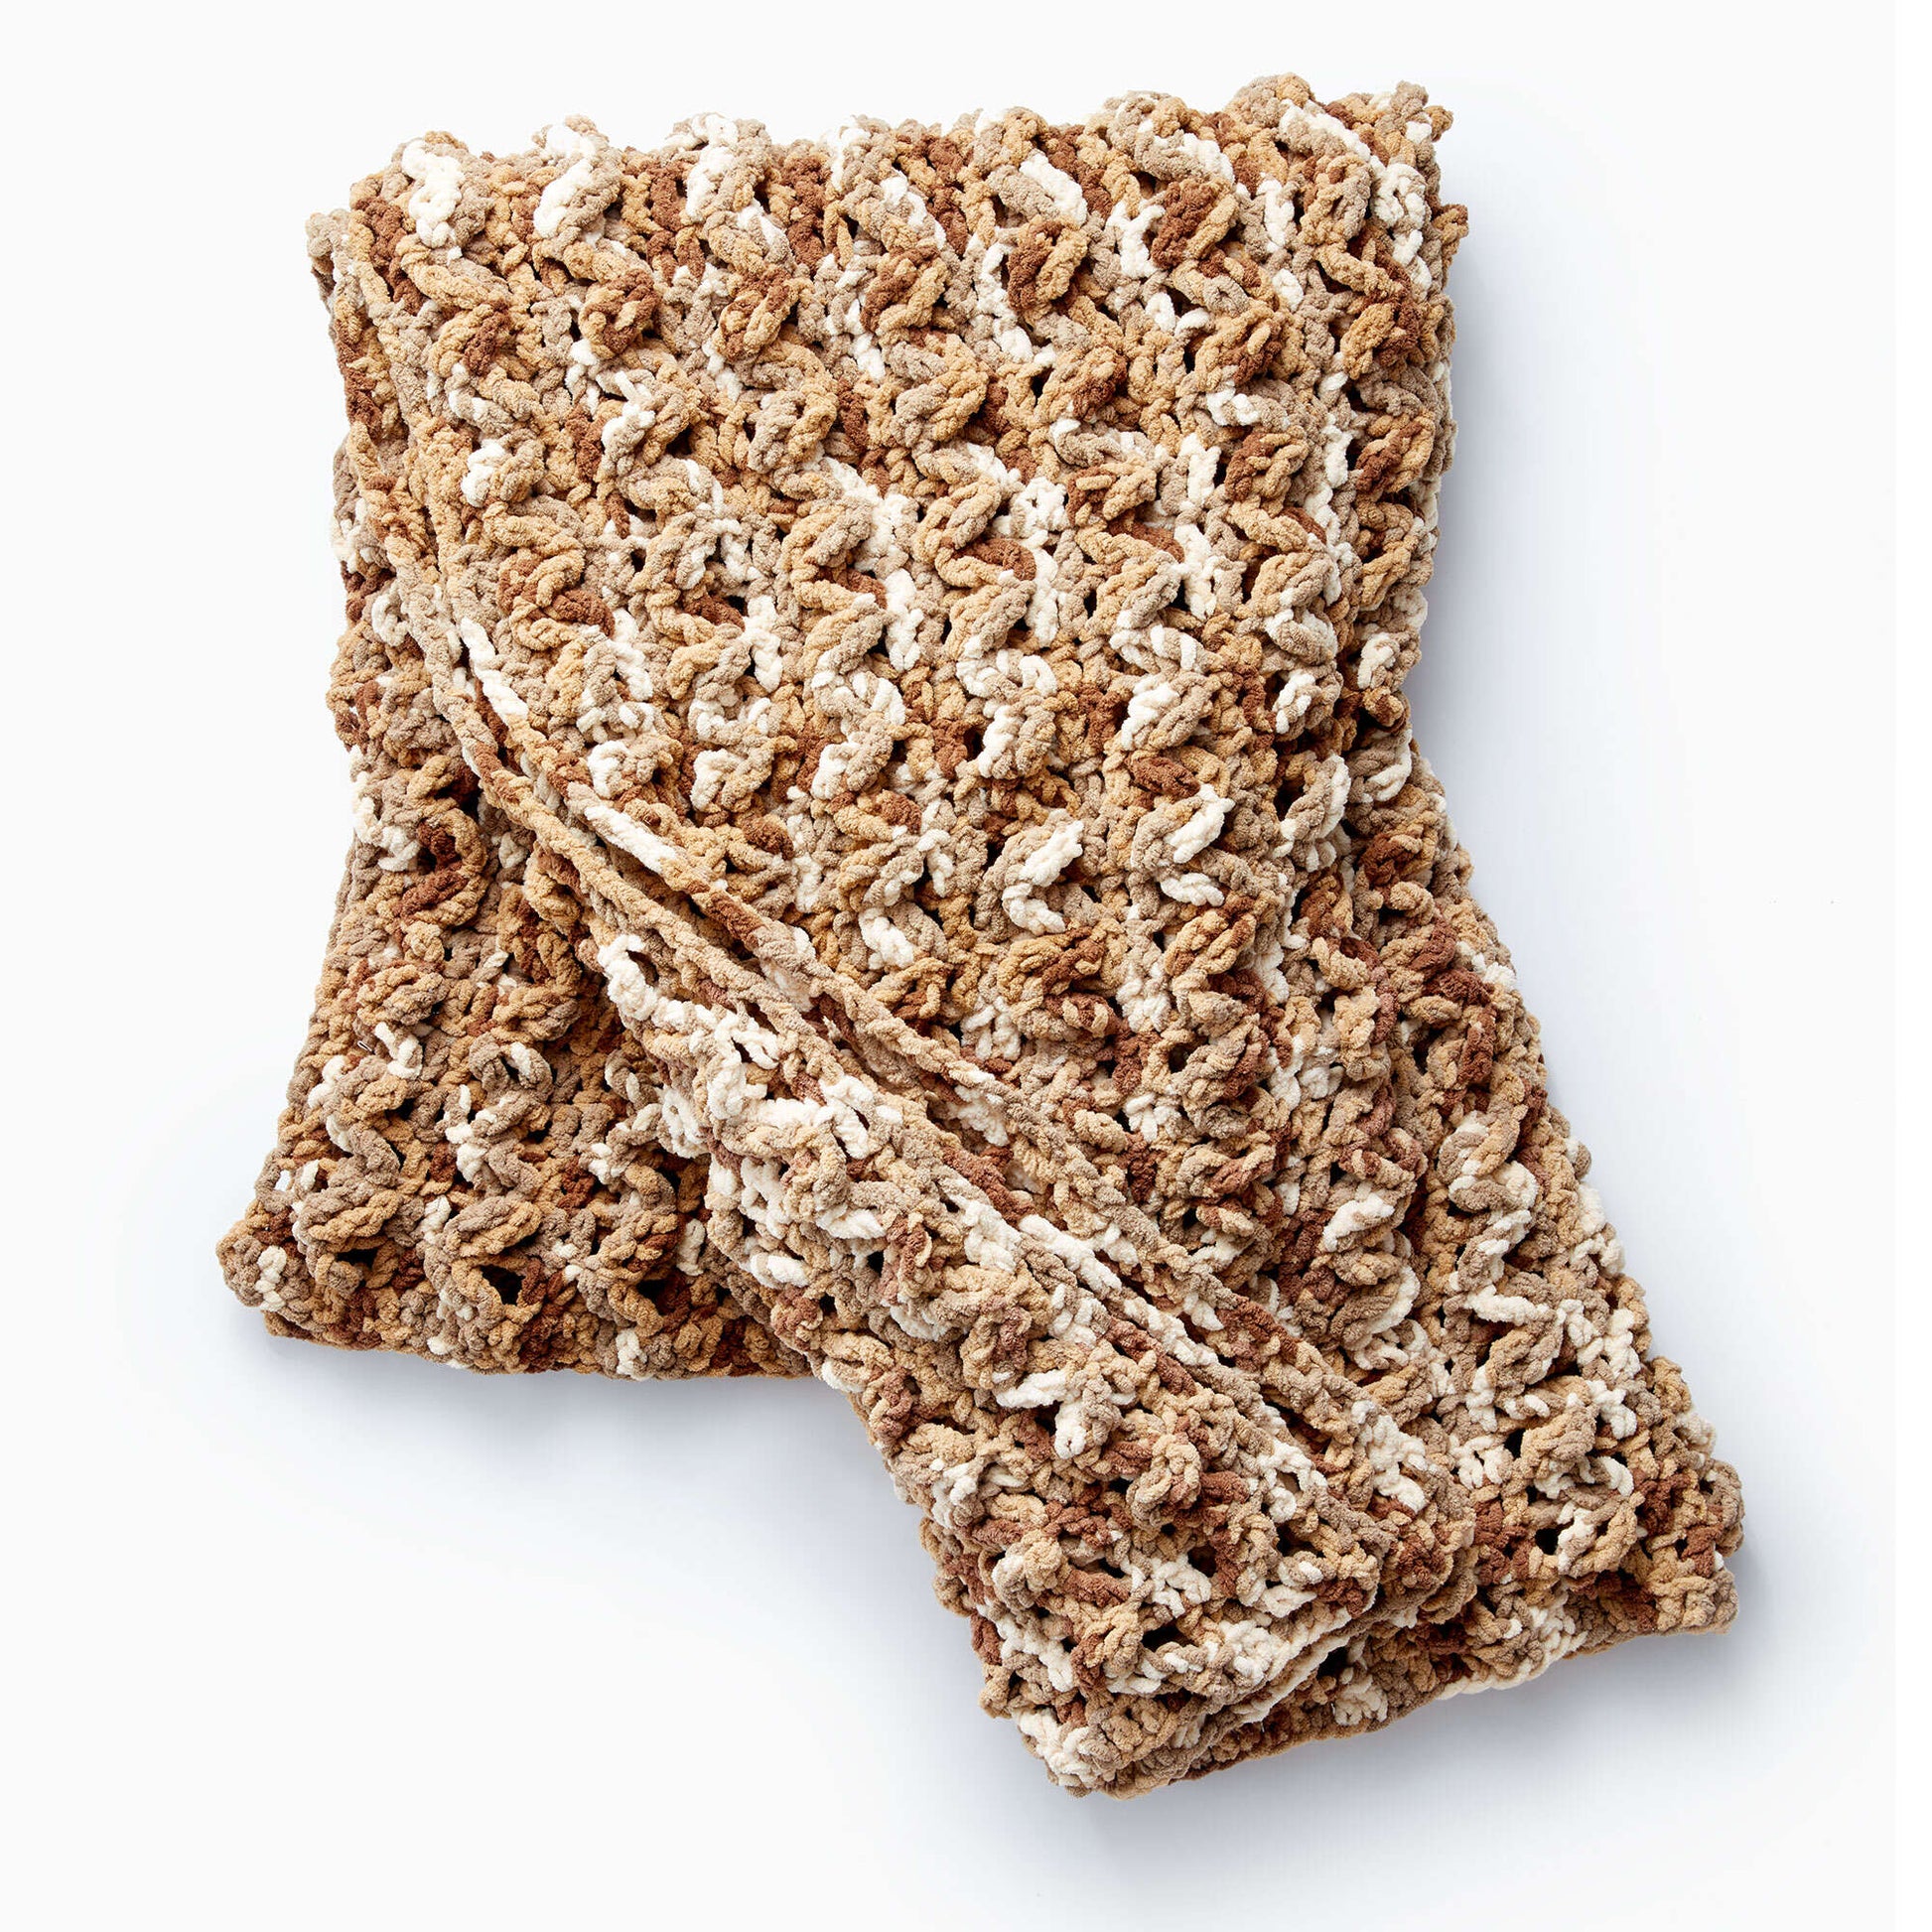 Bernat Wavy Ridge Crochet Blanket Single Size